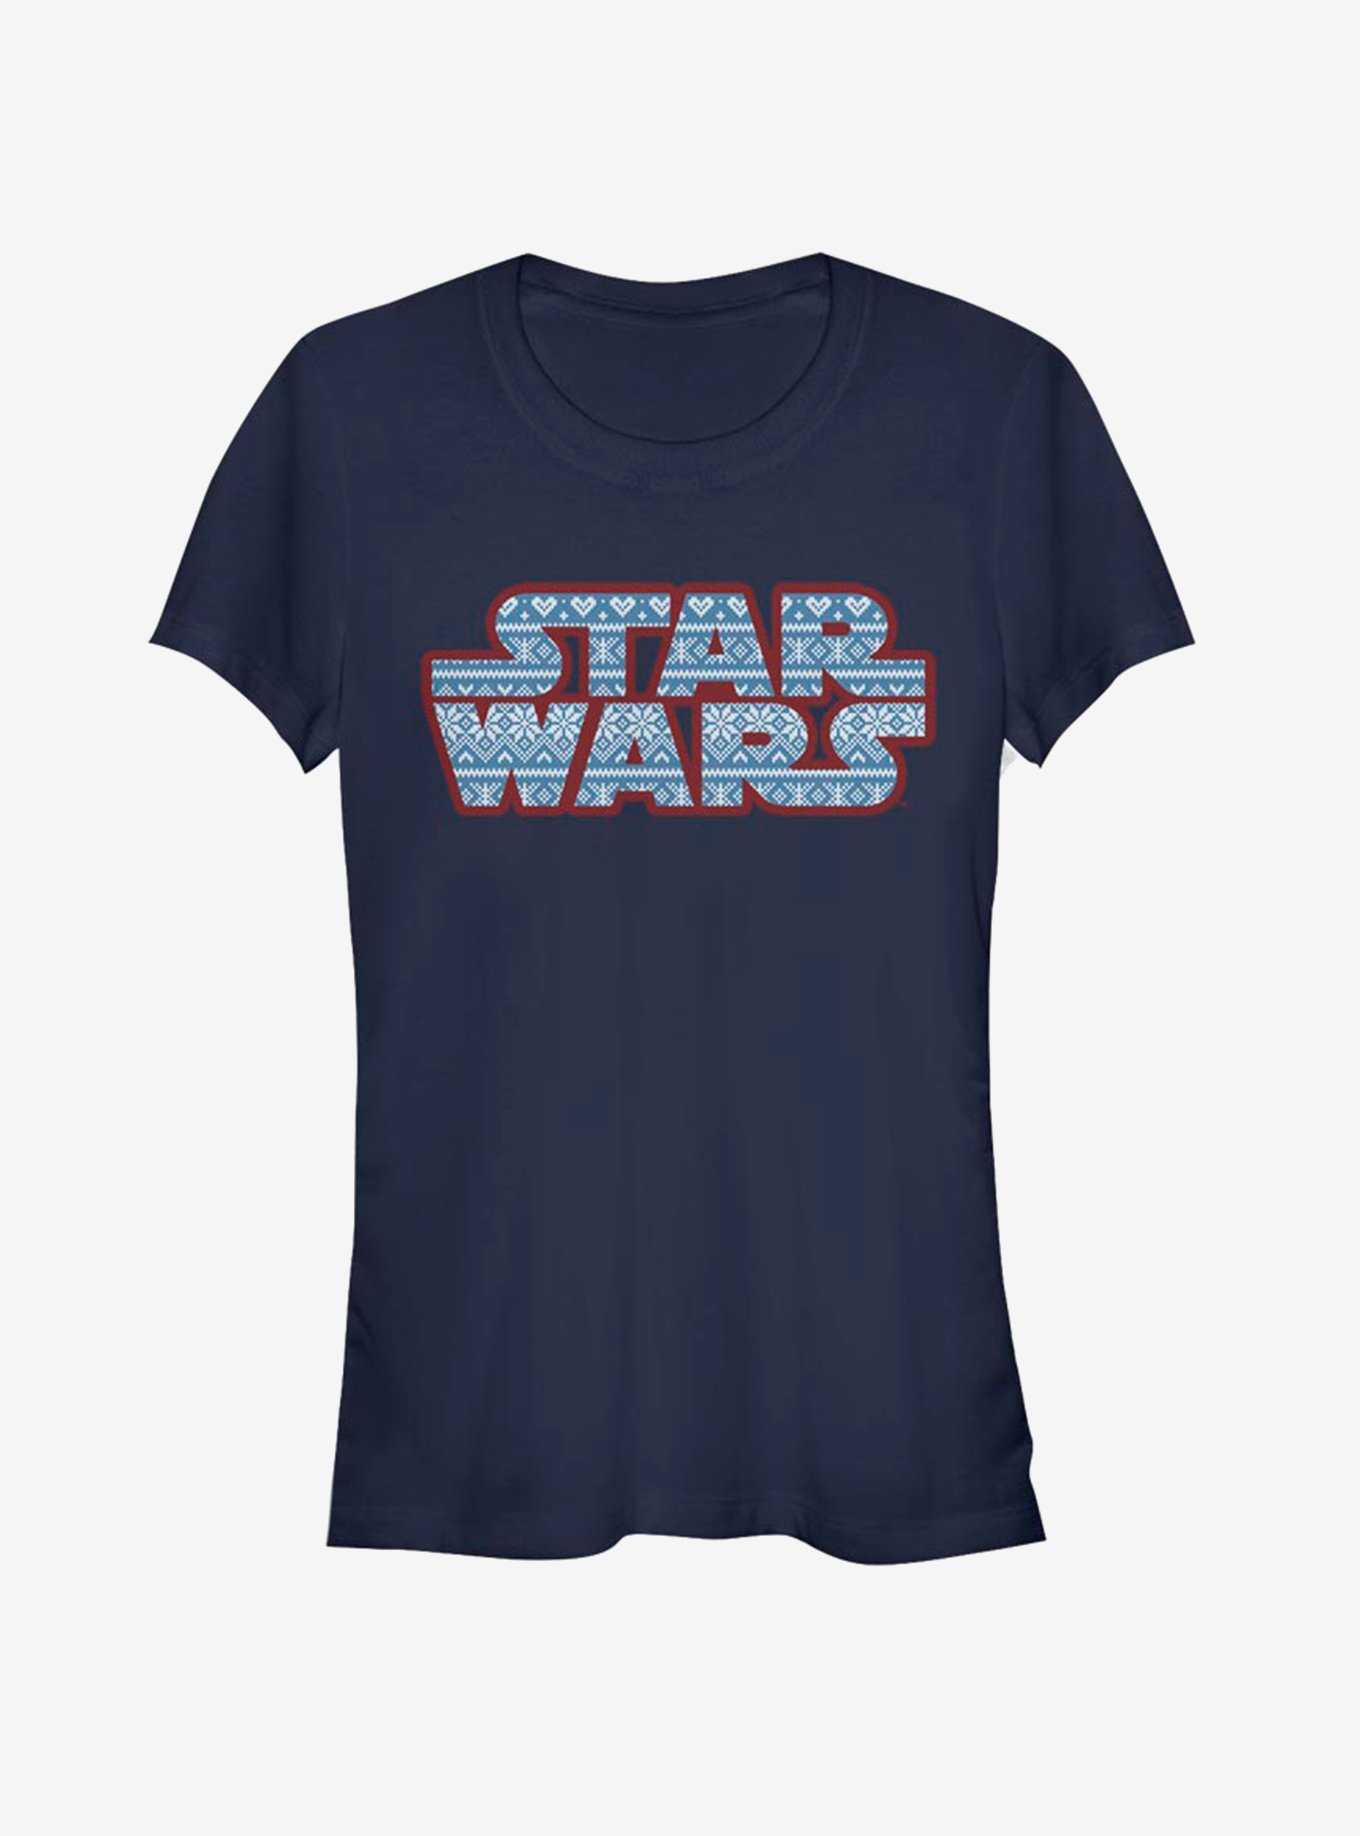 Star Wars Fairisle Logo Girls T-Shirt, , hi-res